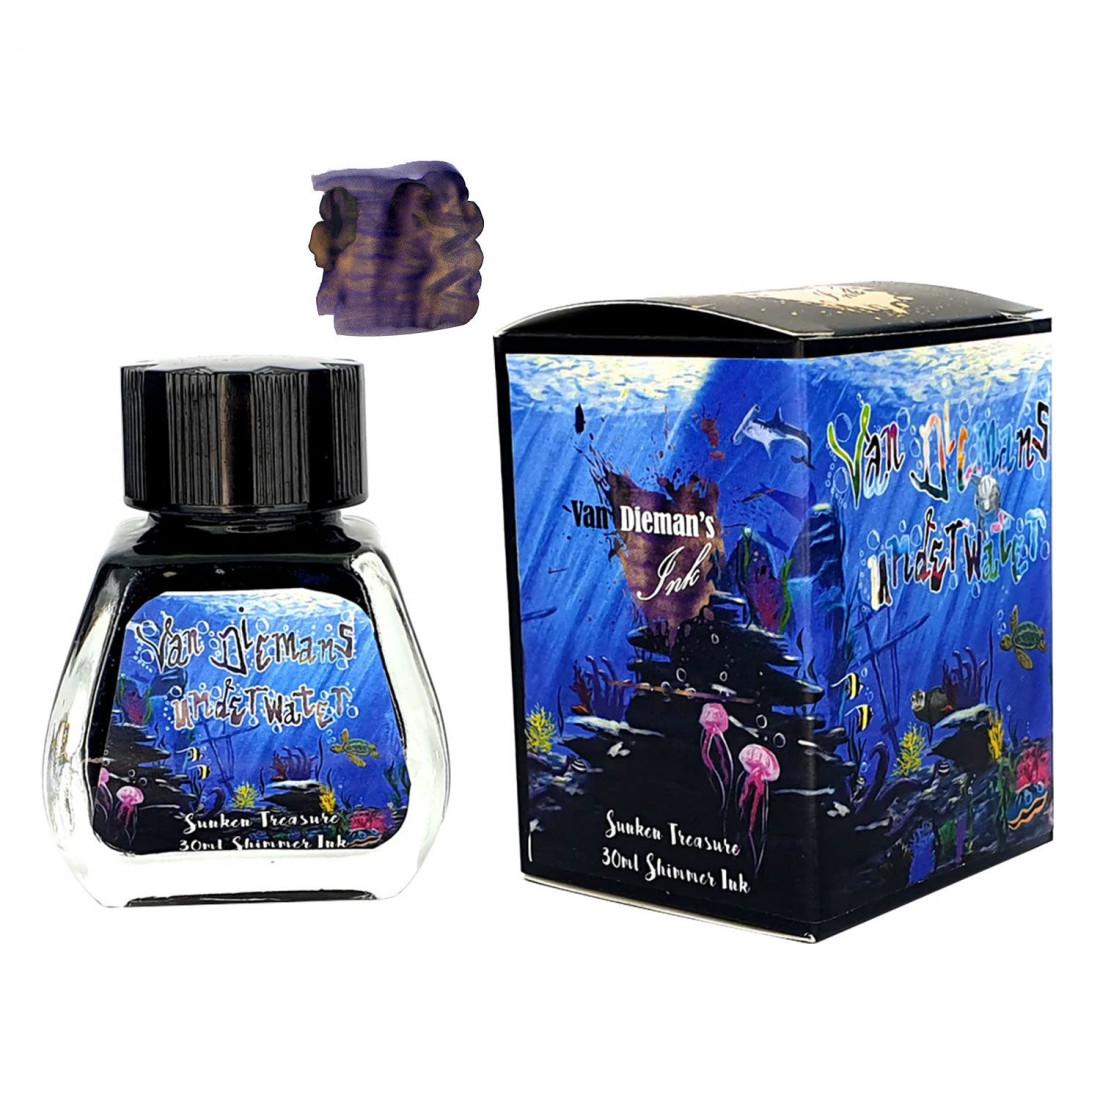 Van Diemans Underwater - Sunken Treasure - Shimmer 30ml Ink